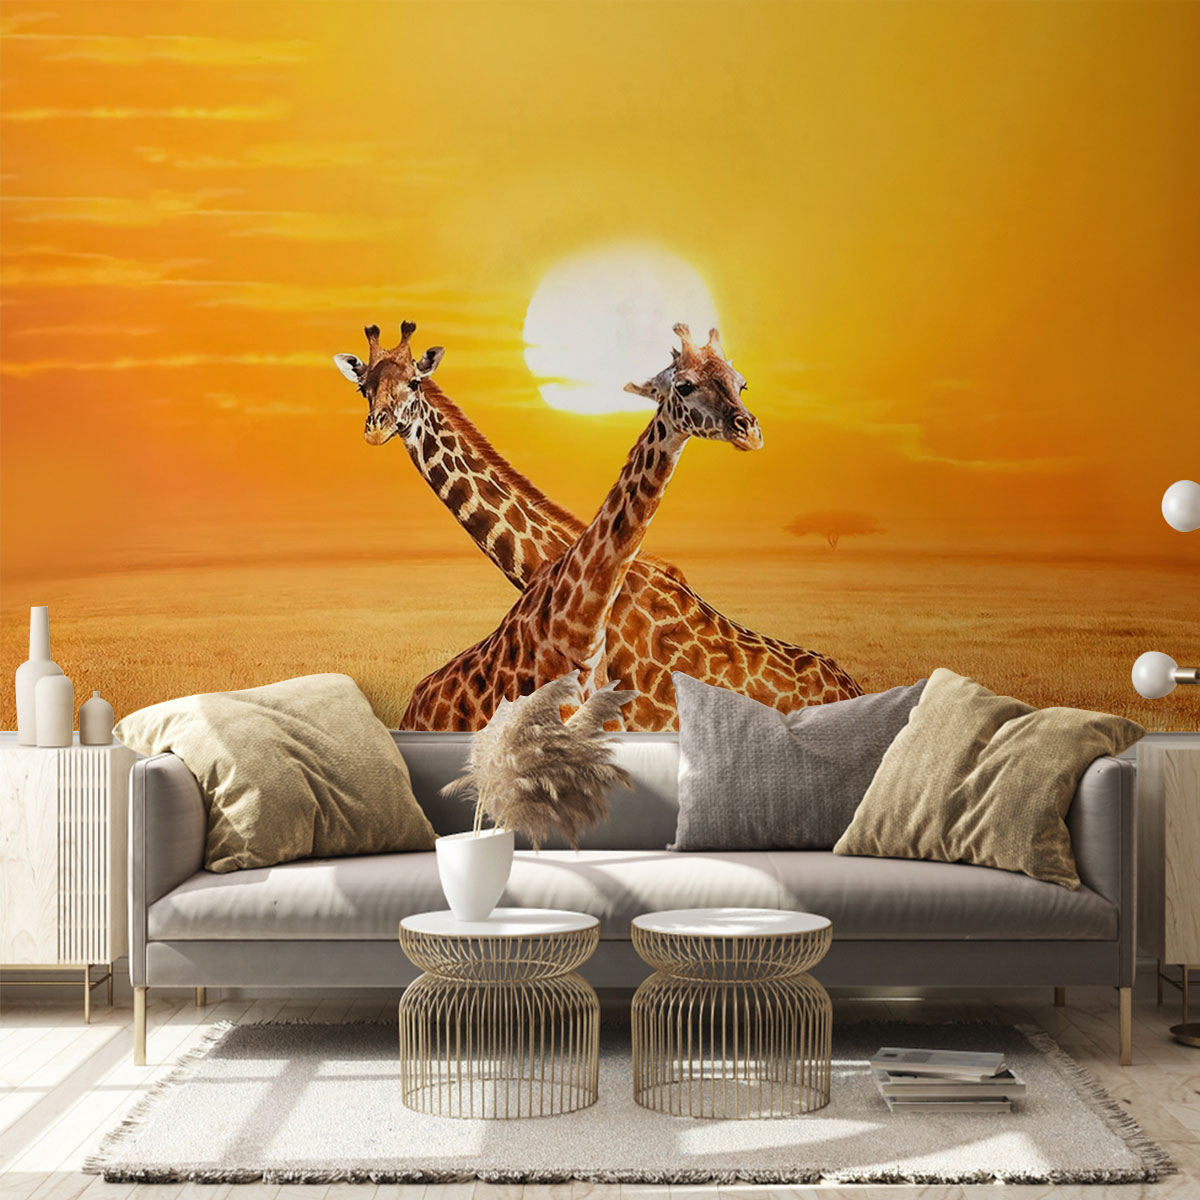 Giraffe Under The Sunset Wall Mural_2_1